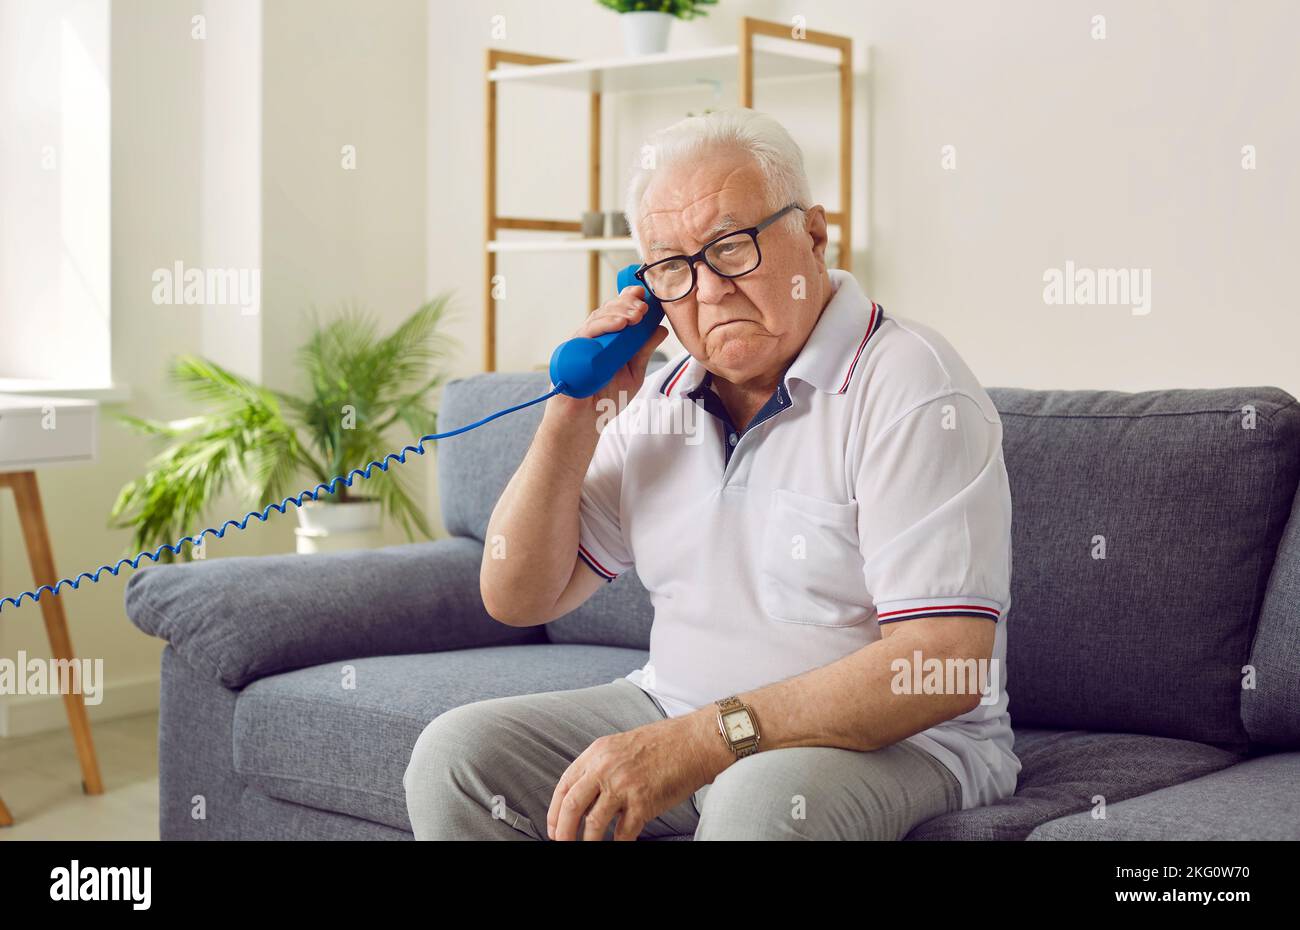 L'anziano non tiene correttamente il telefono fisso e non capisce perché non riesce a sentire nulla. Foto Stock